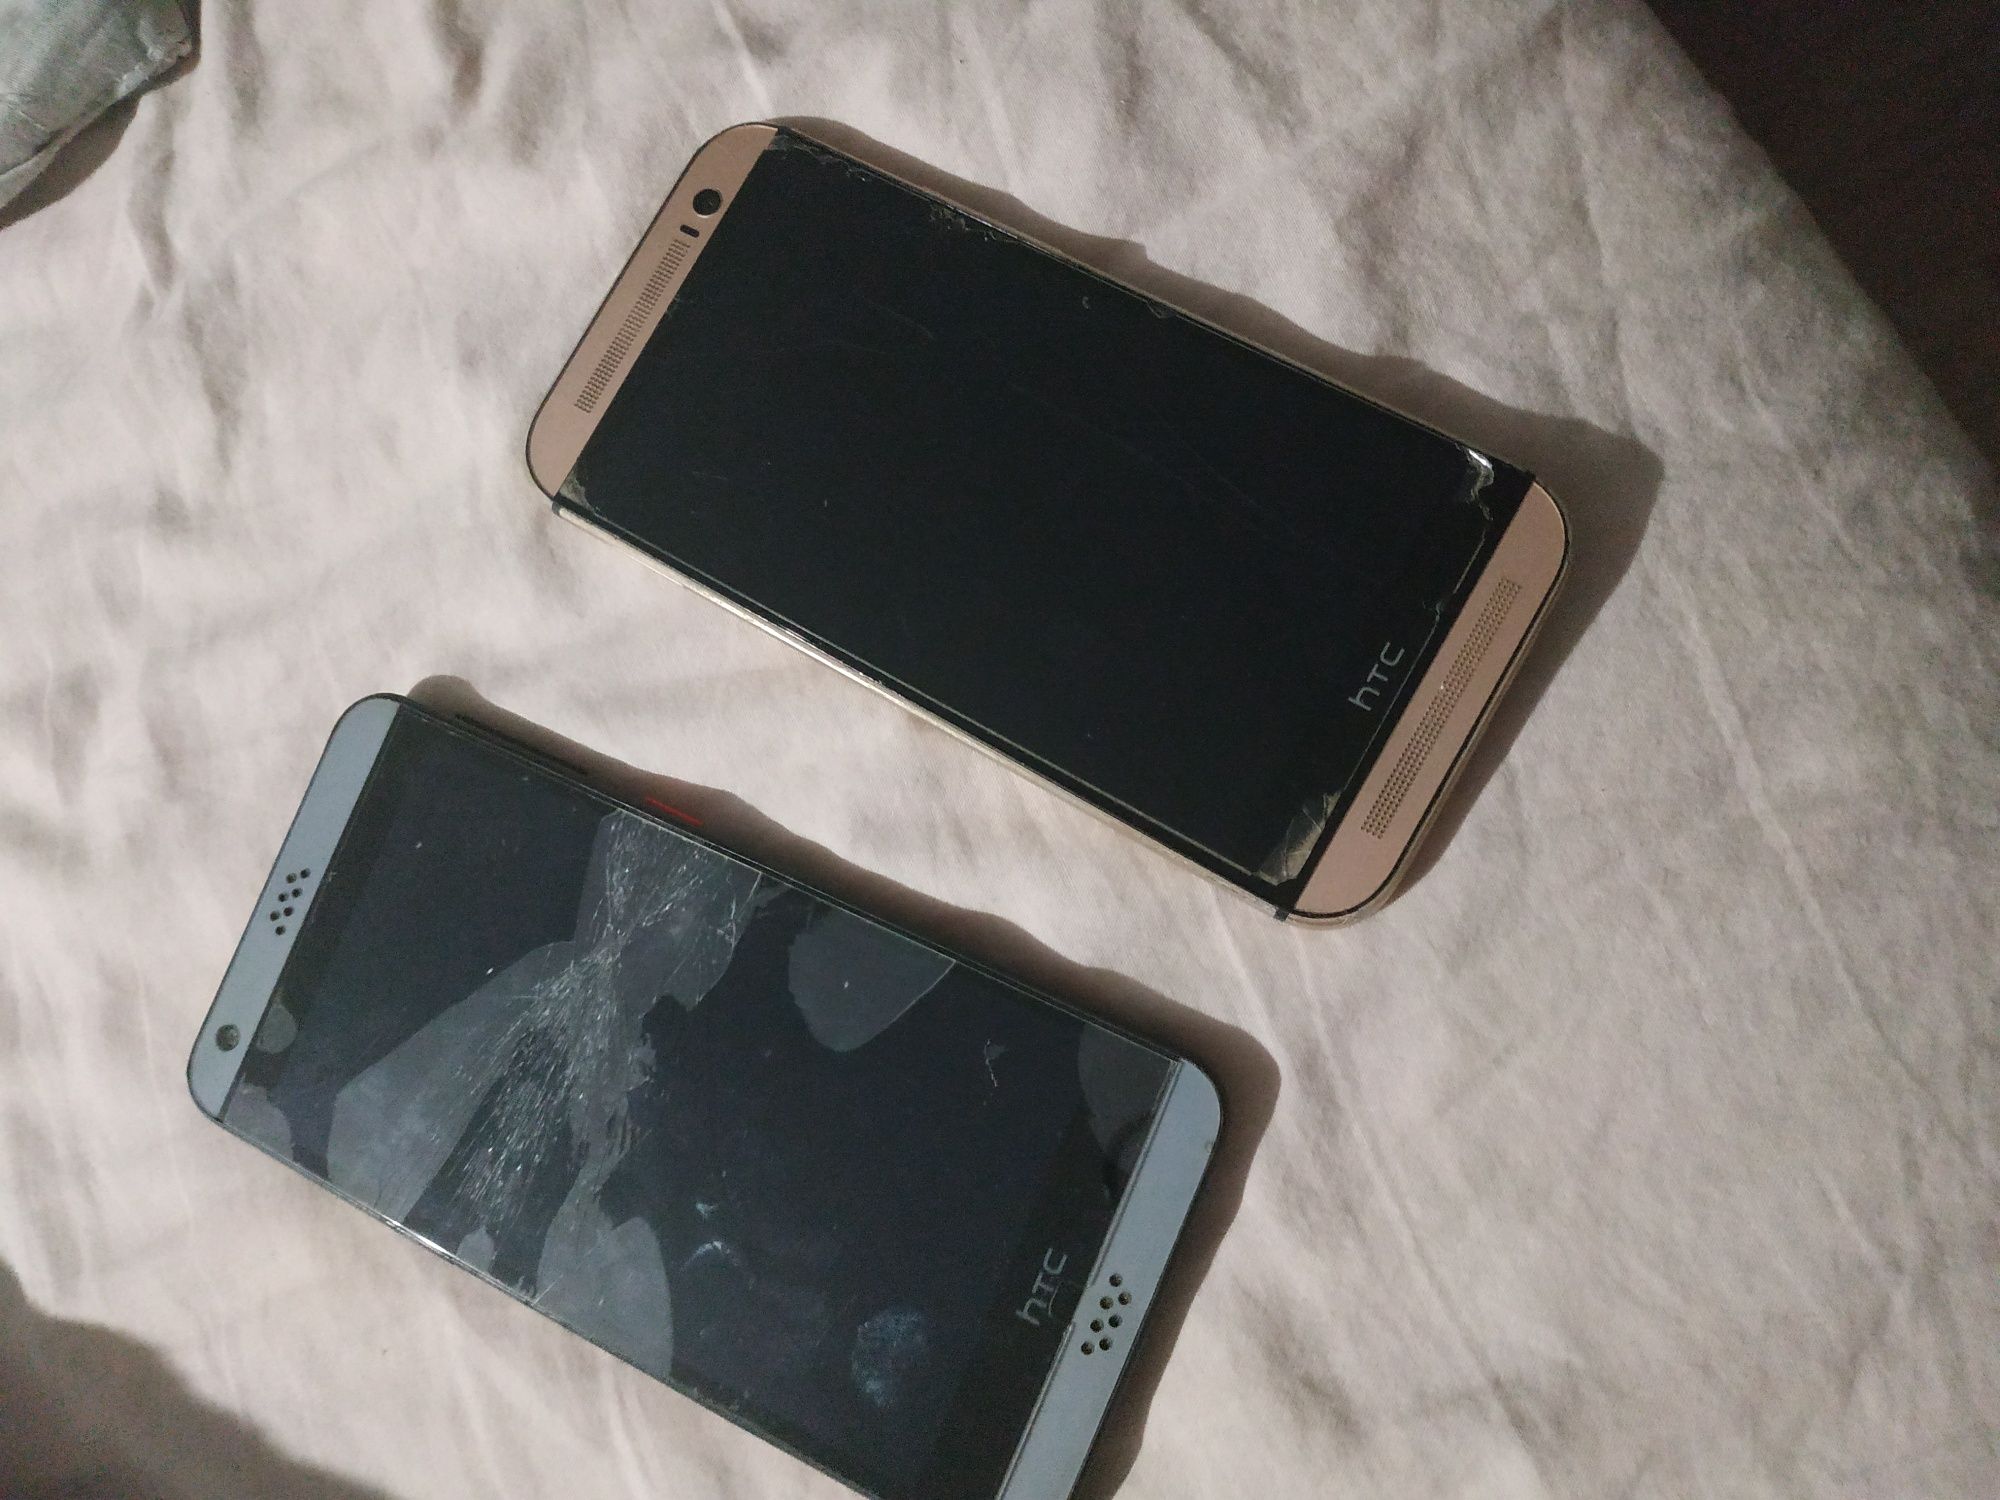 Telefon HTC dwie sztuki uszkodzony jeden się wyłącza a drugi piękniety